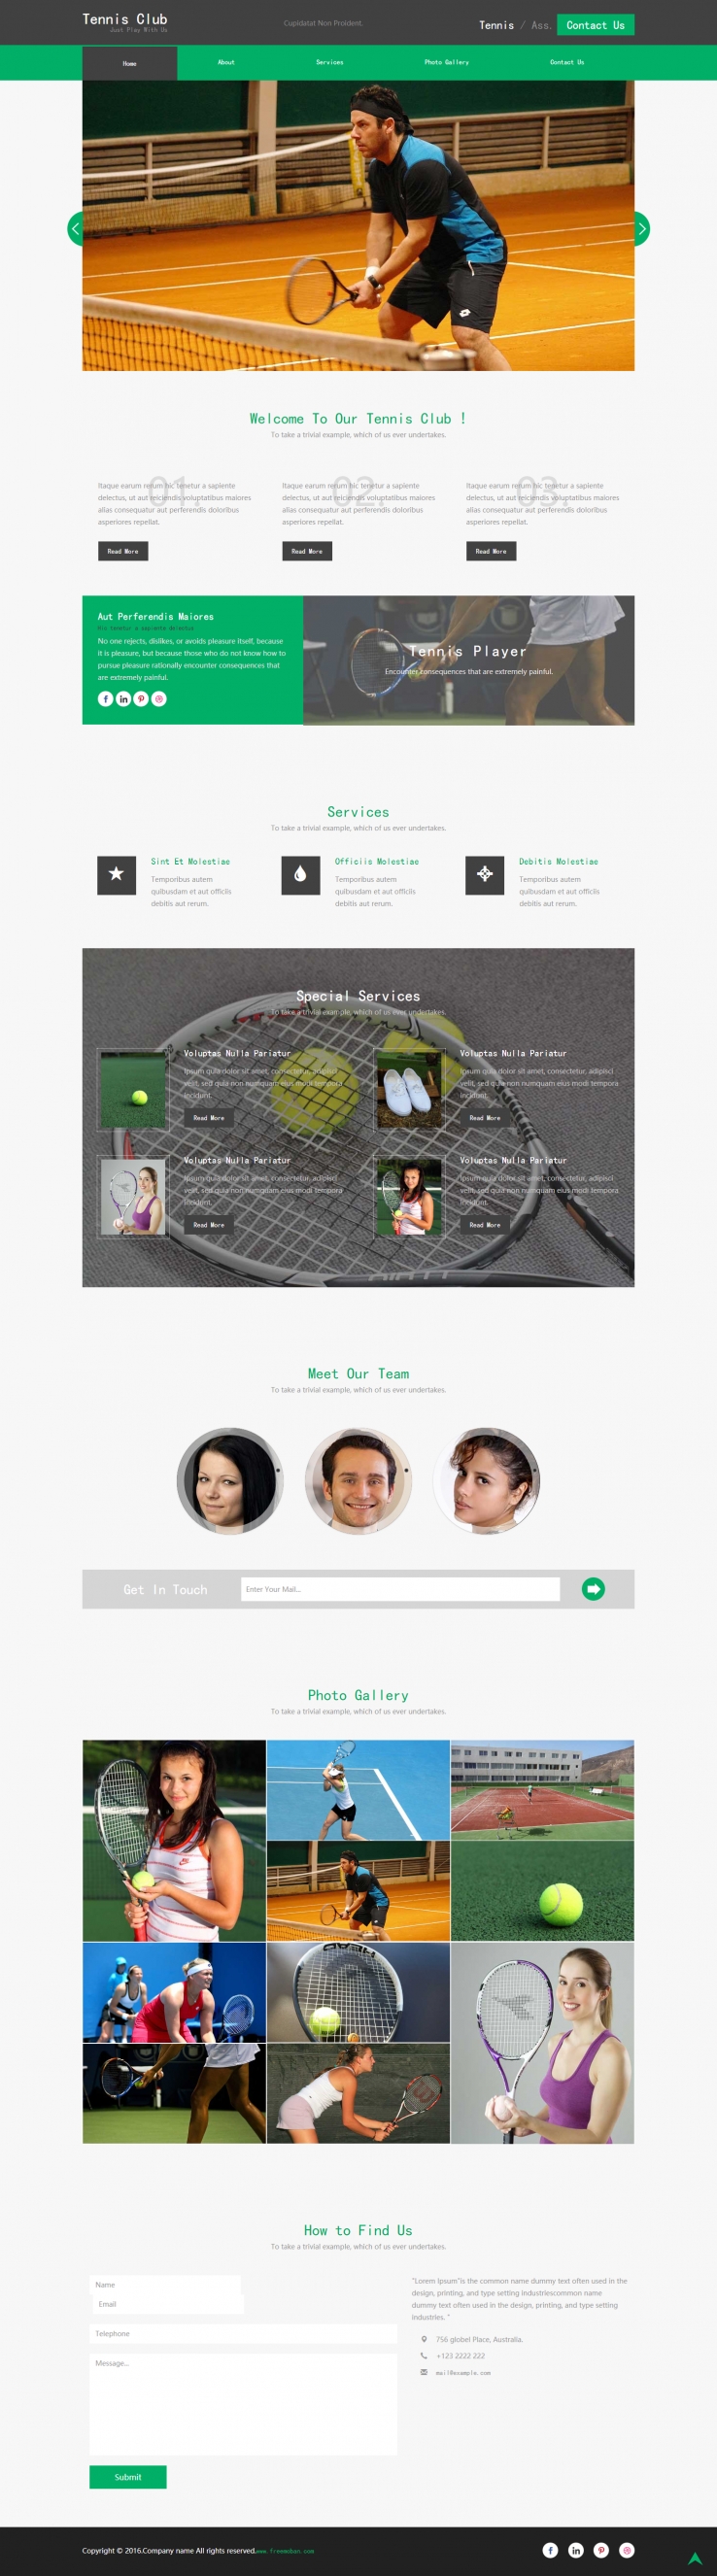 绿色简洁风格的网球体育竞技企业网站模板下载